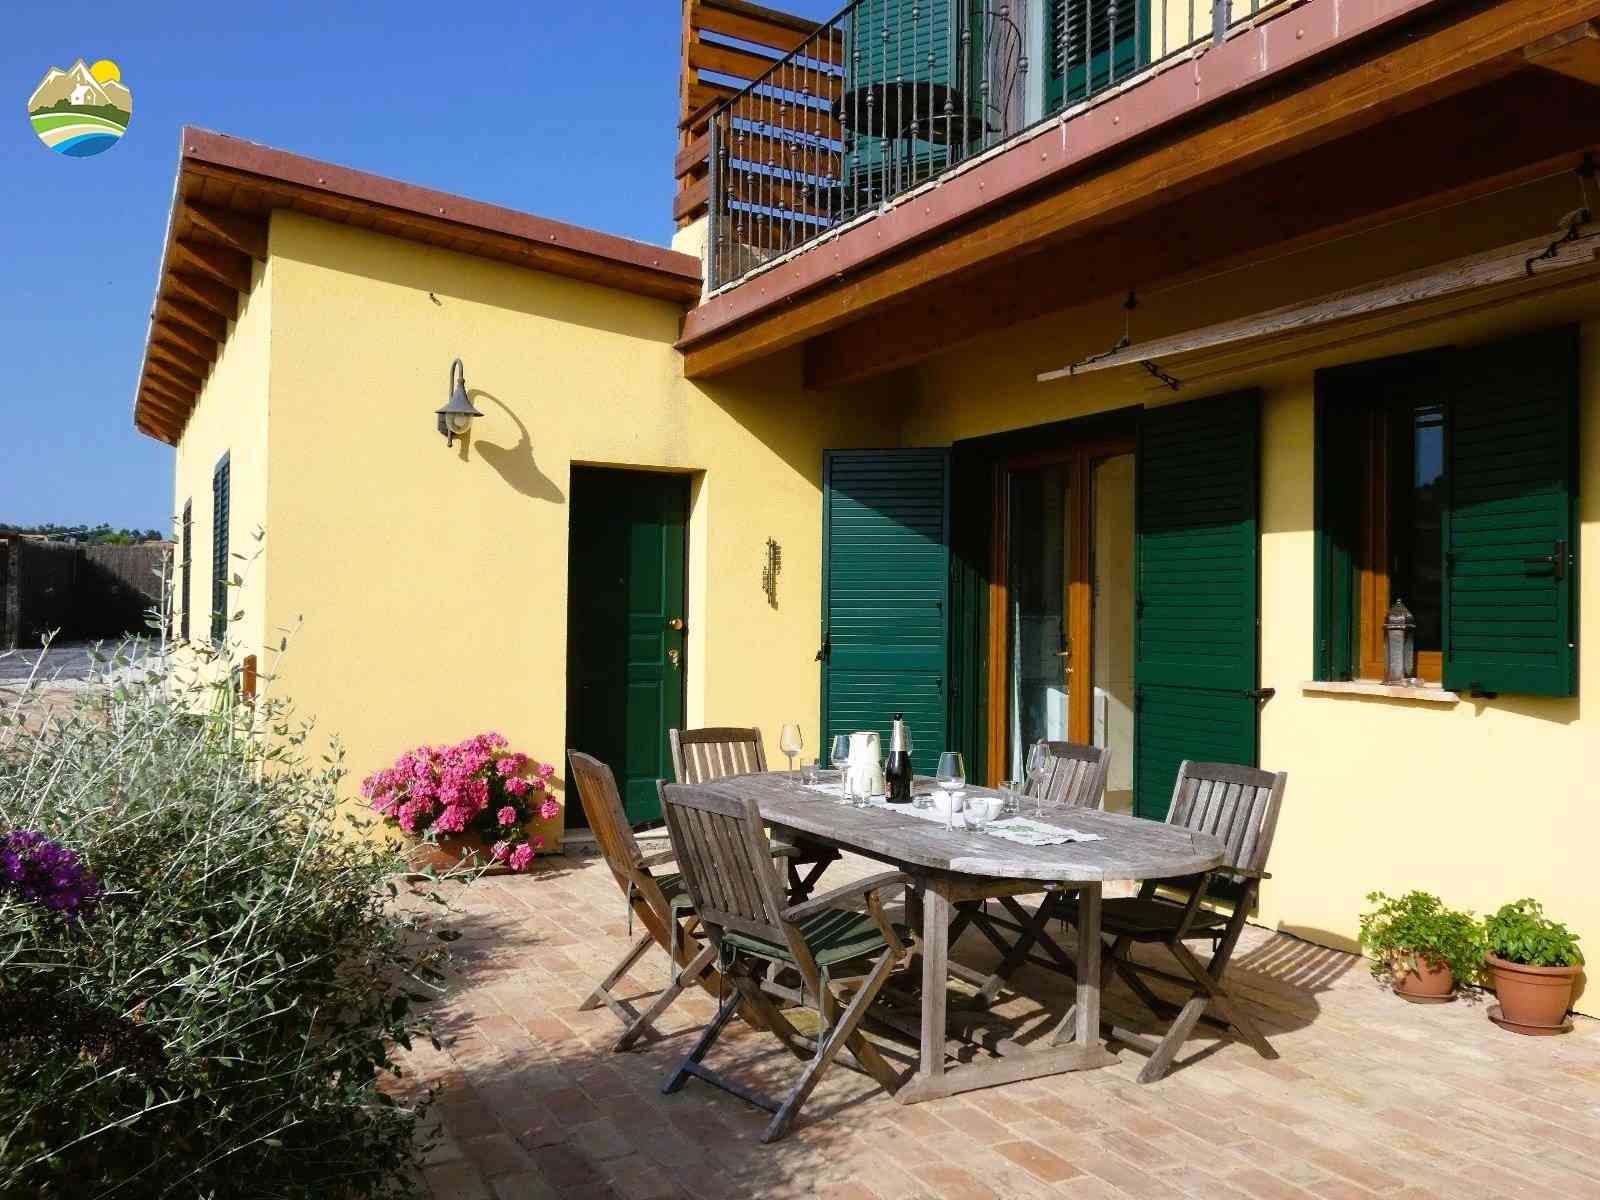 Villa Villa in vendita Bellante (TE), Villa Il Frutteto - Bellante - EUR 509.983 810